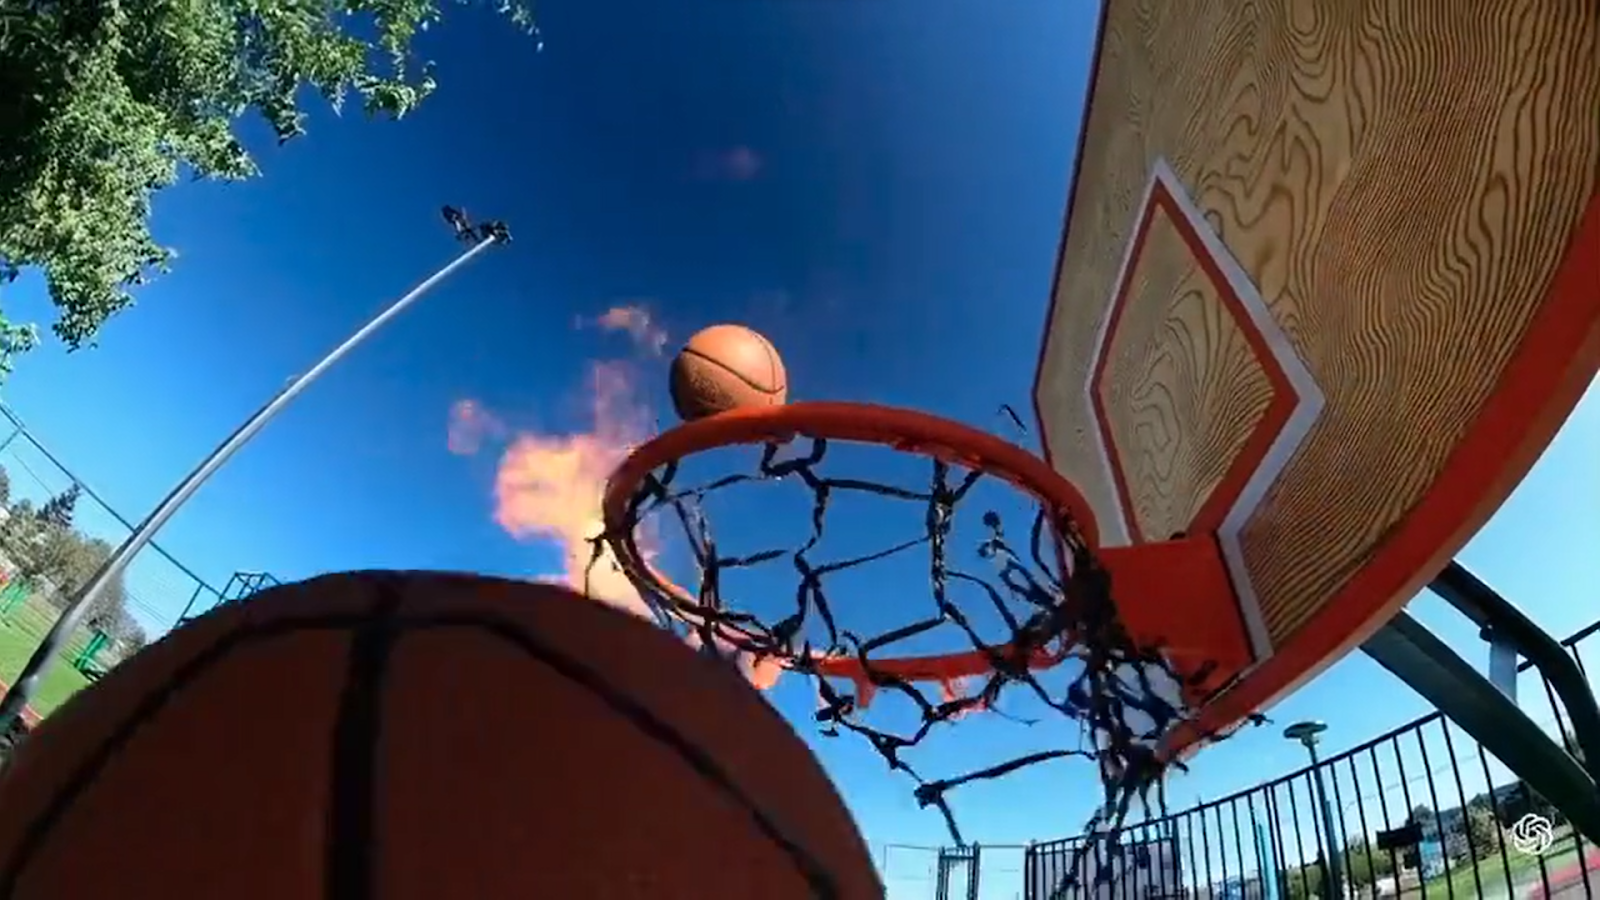 Una canasta de baloncesto con una pelota en el aireDescripción generada automáticamente